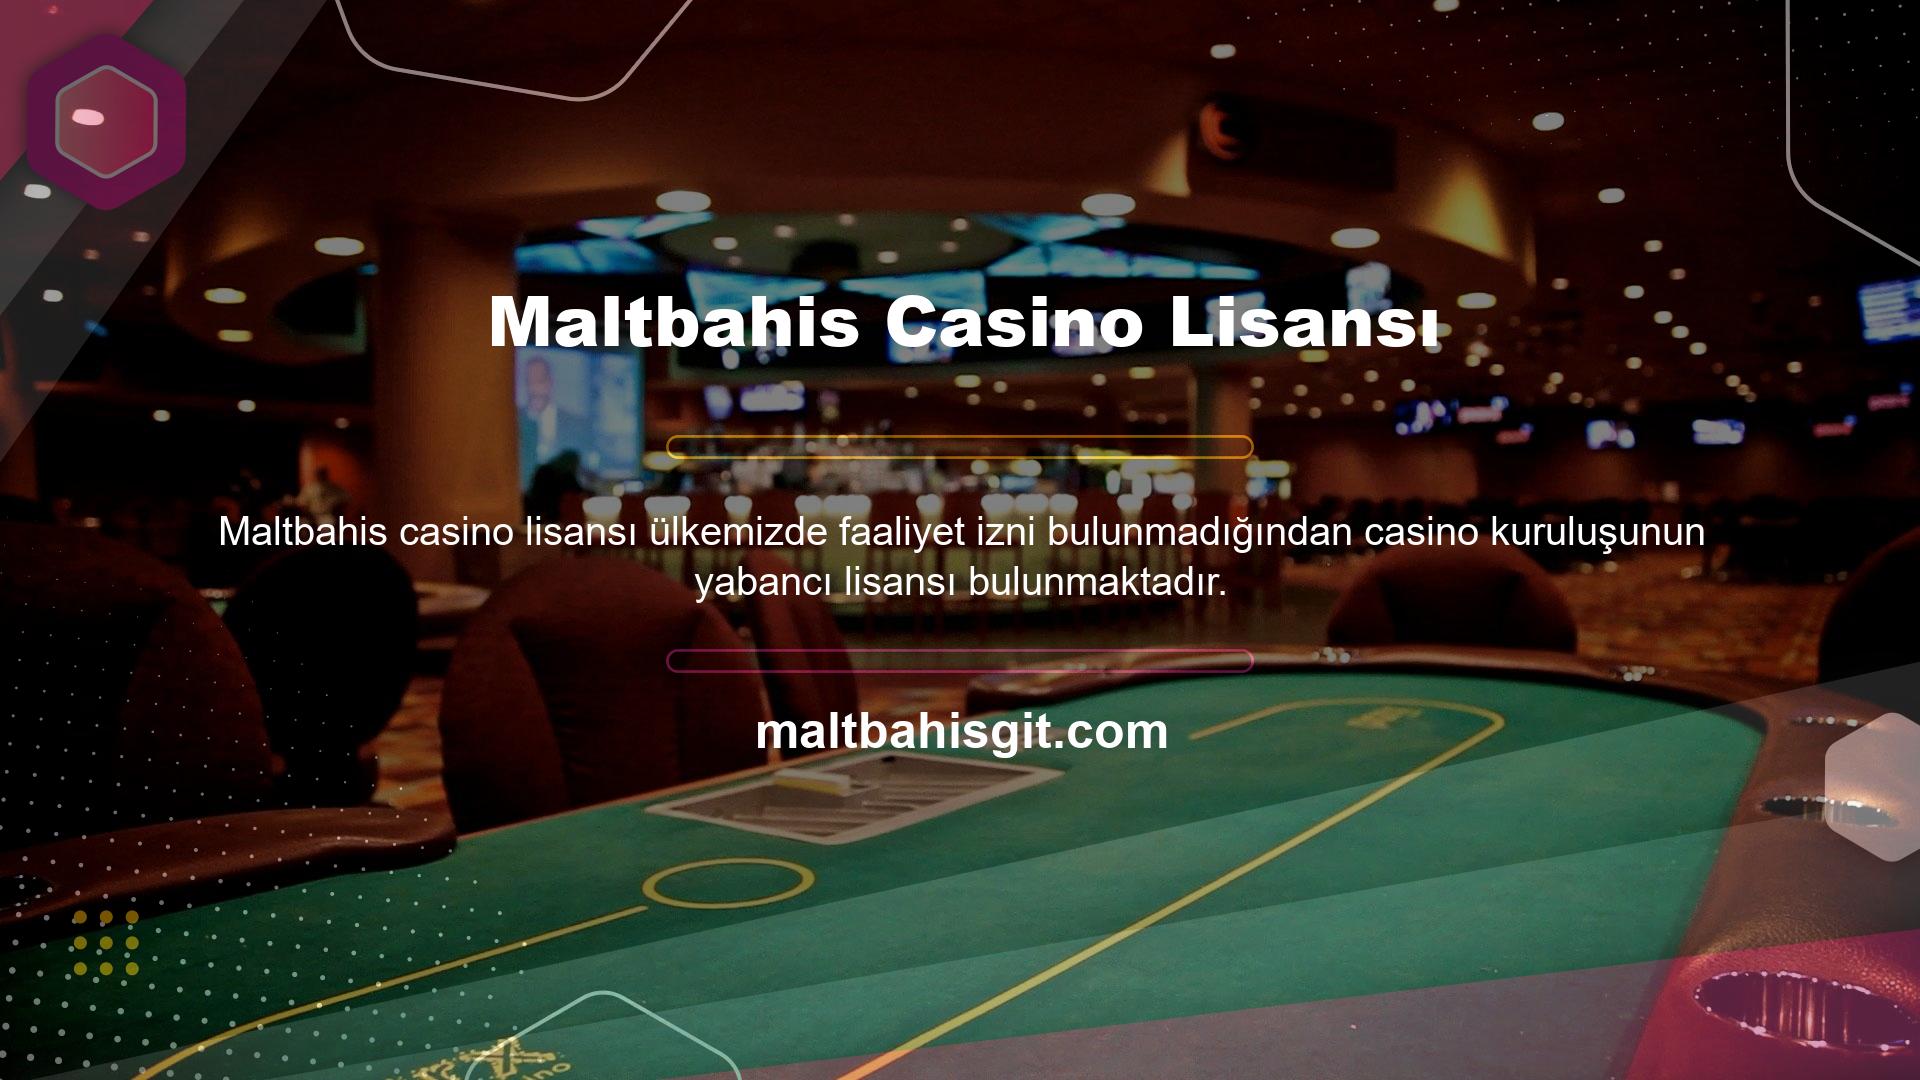 Maltbahis casino sitesi de bunlardan biri